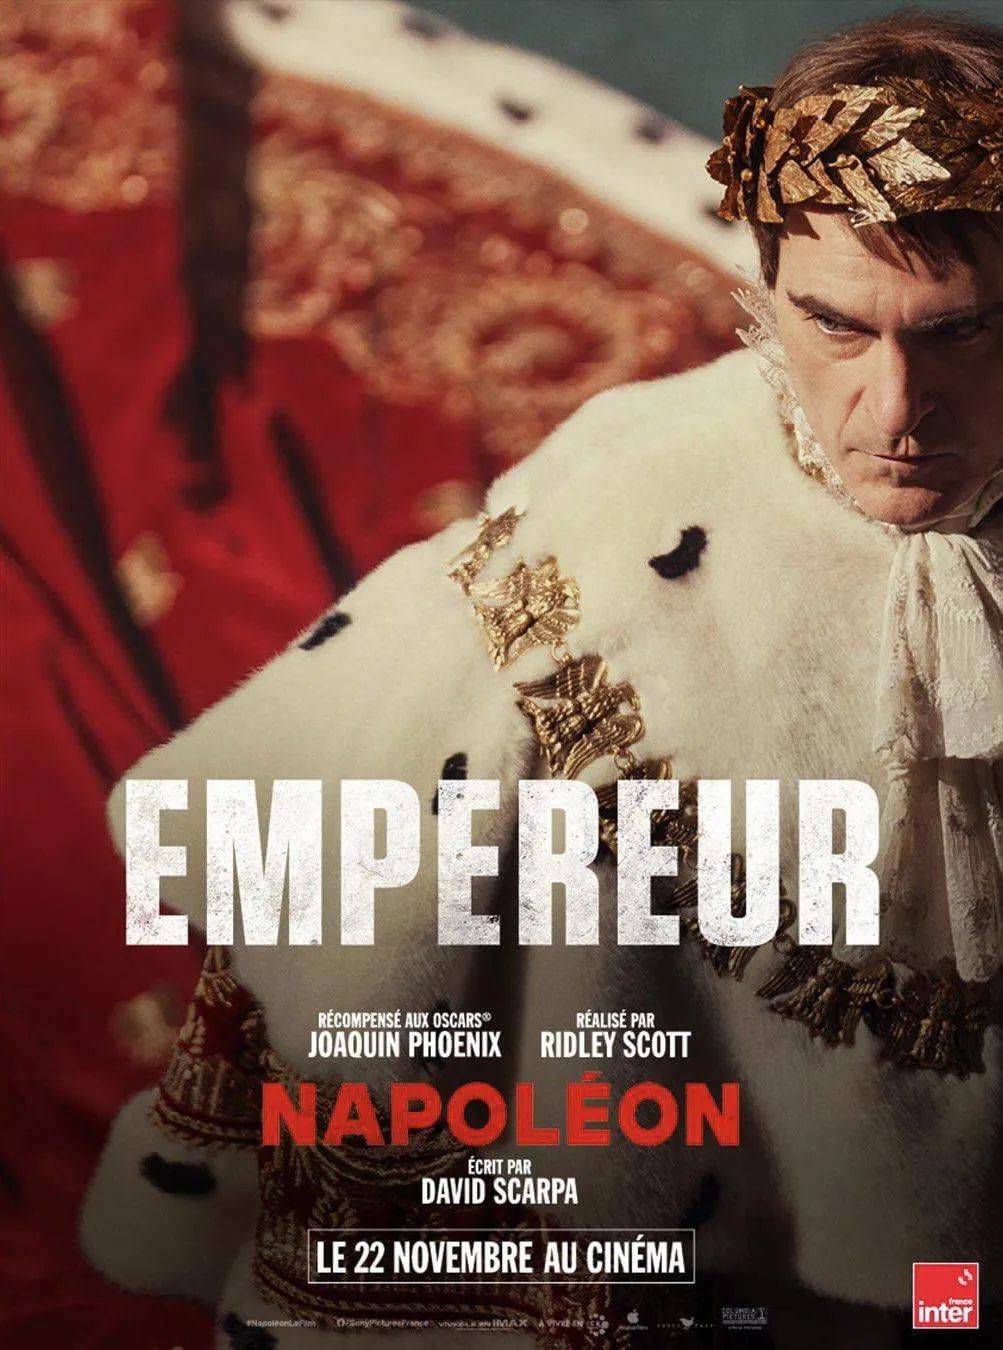 拿破仑与约瑟芬电视剧图片